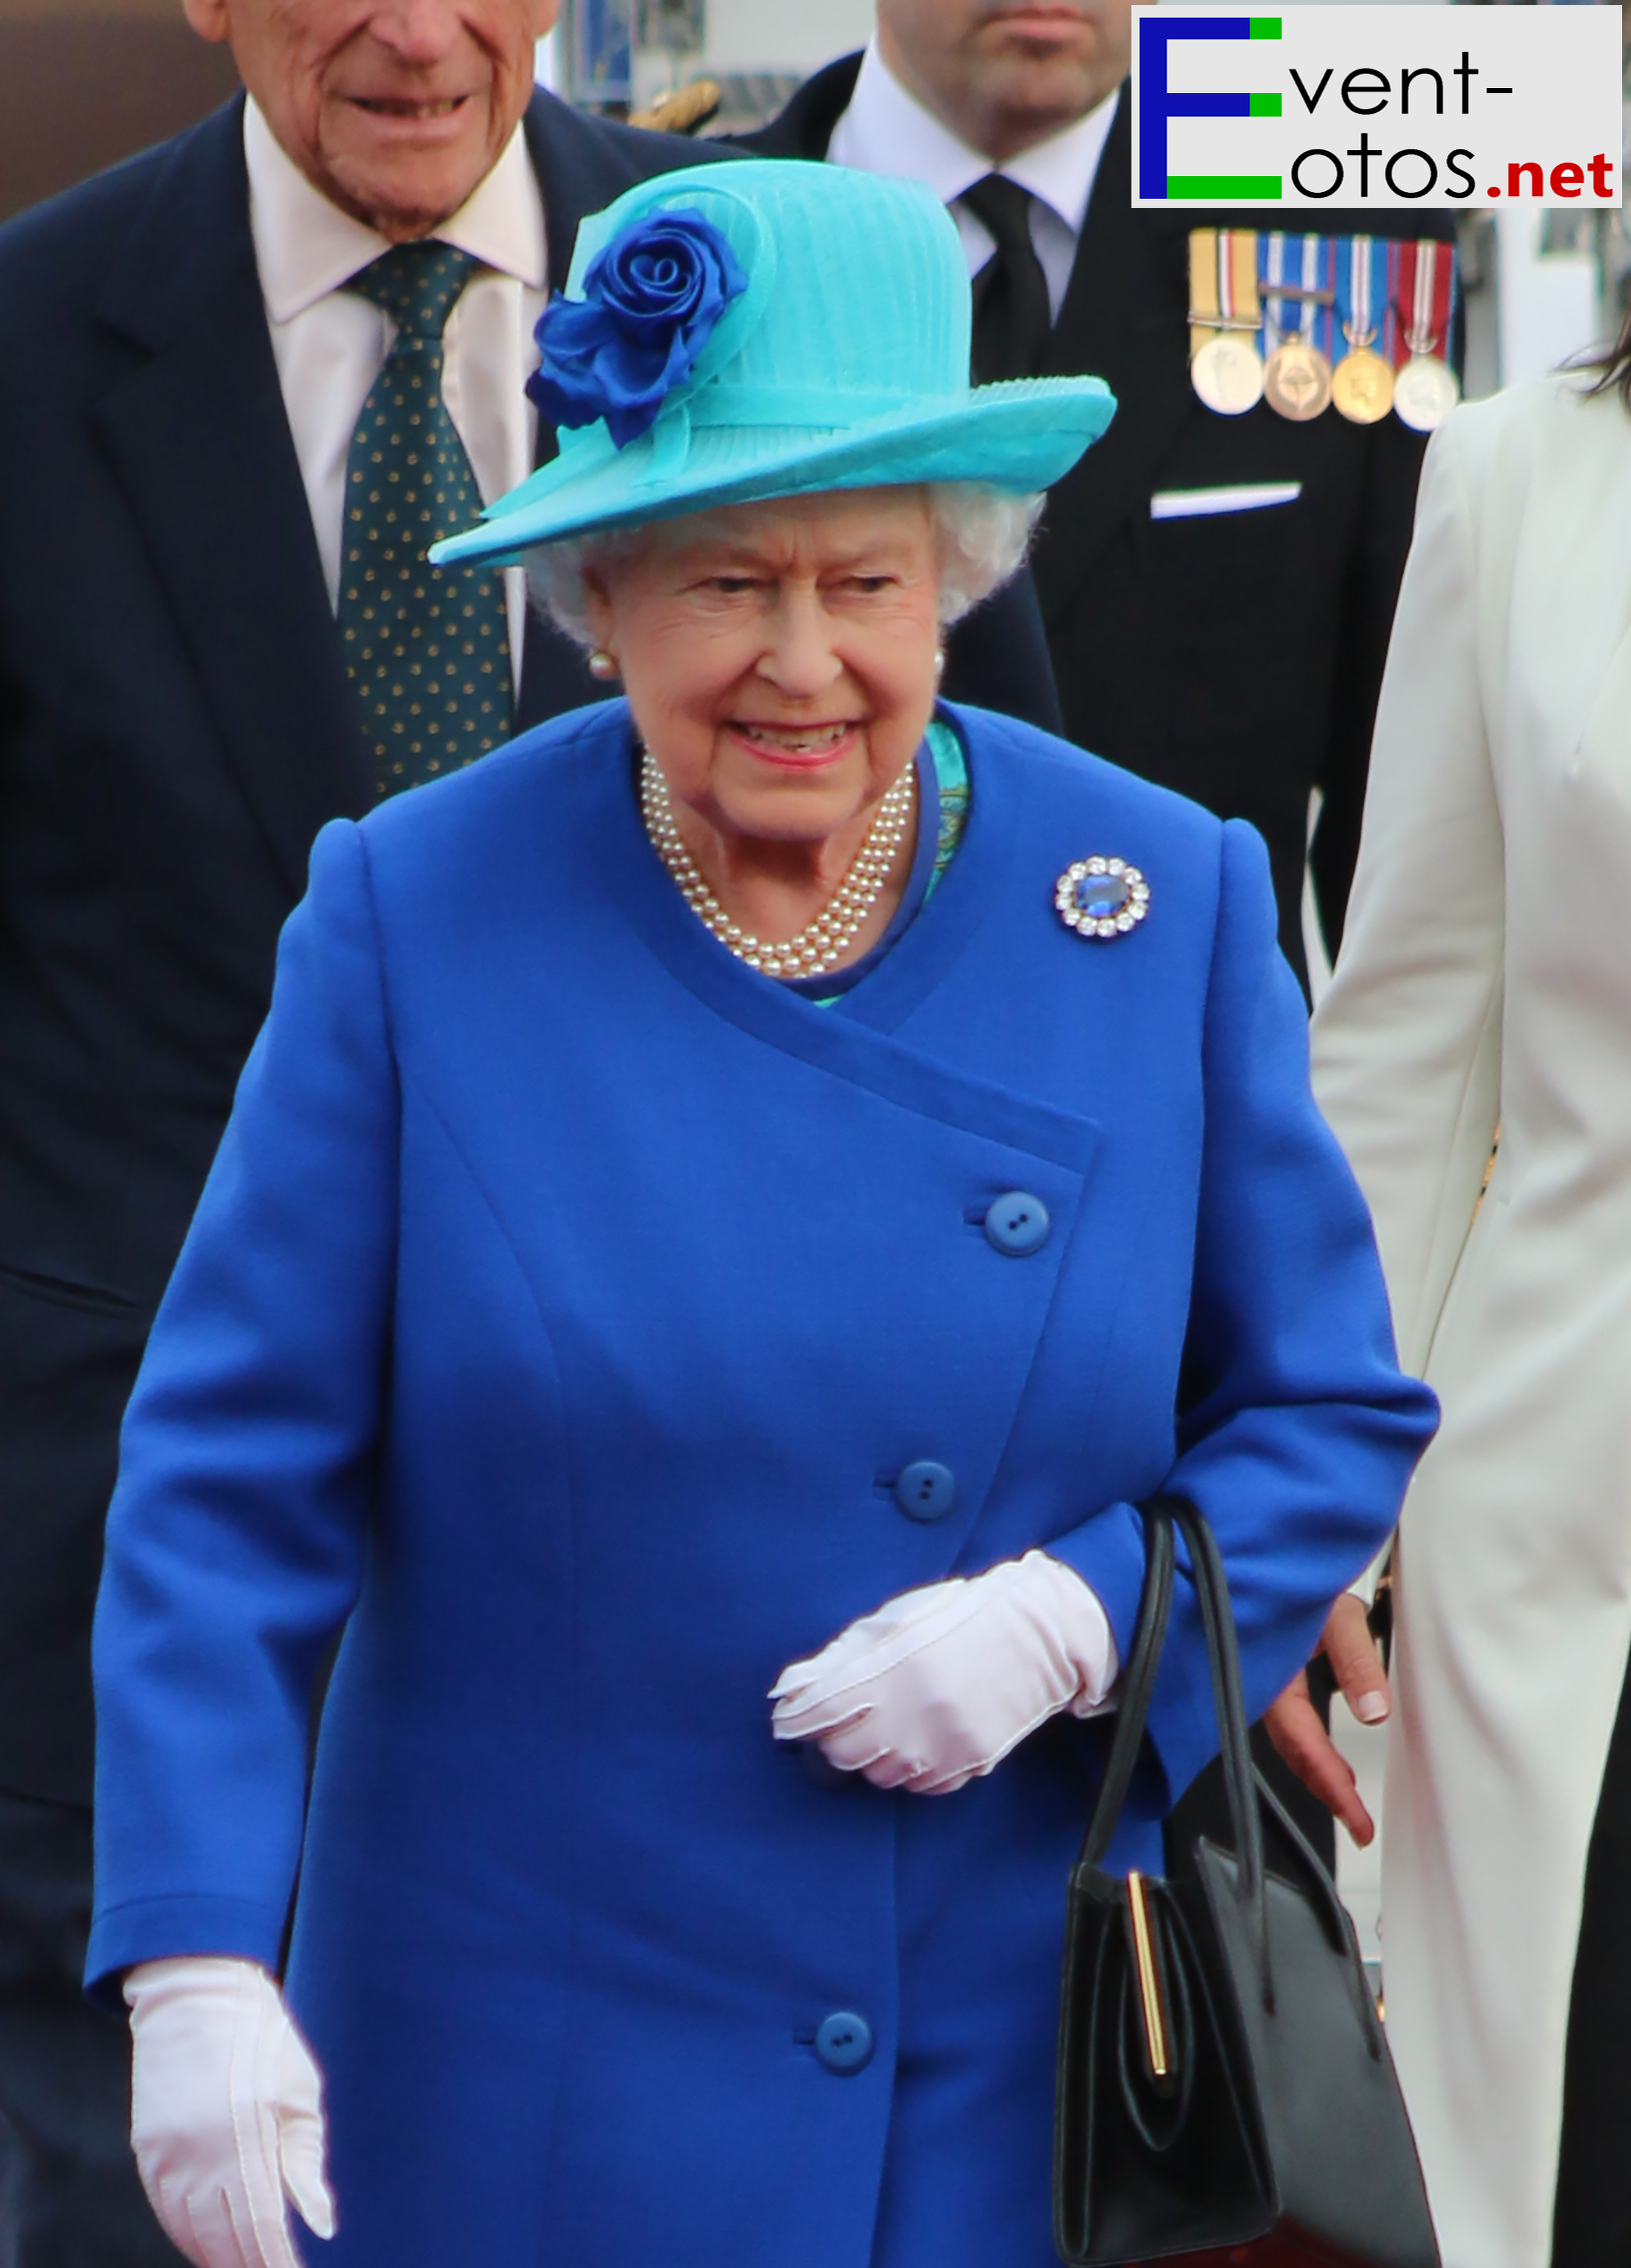 KÃ¶nigin Elisabeth II in royalem Blau
